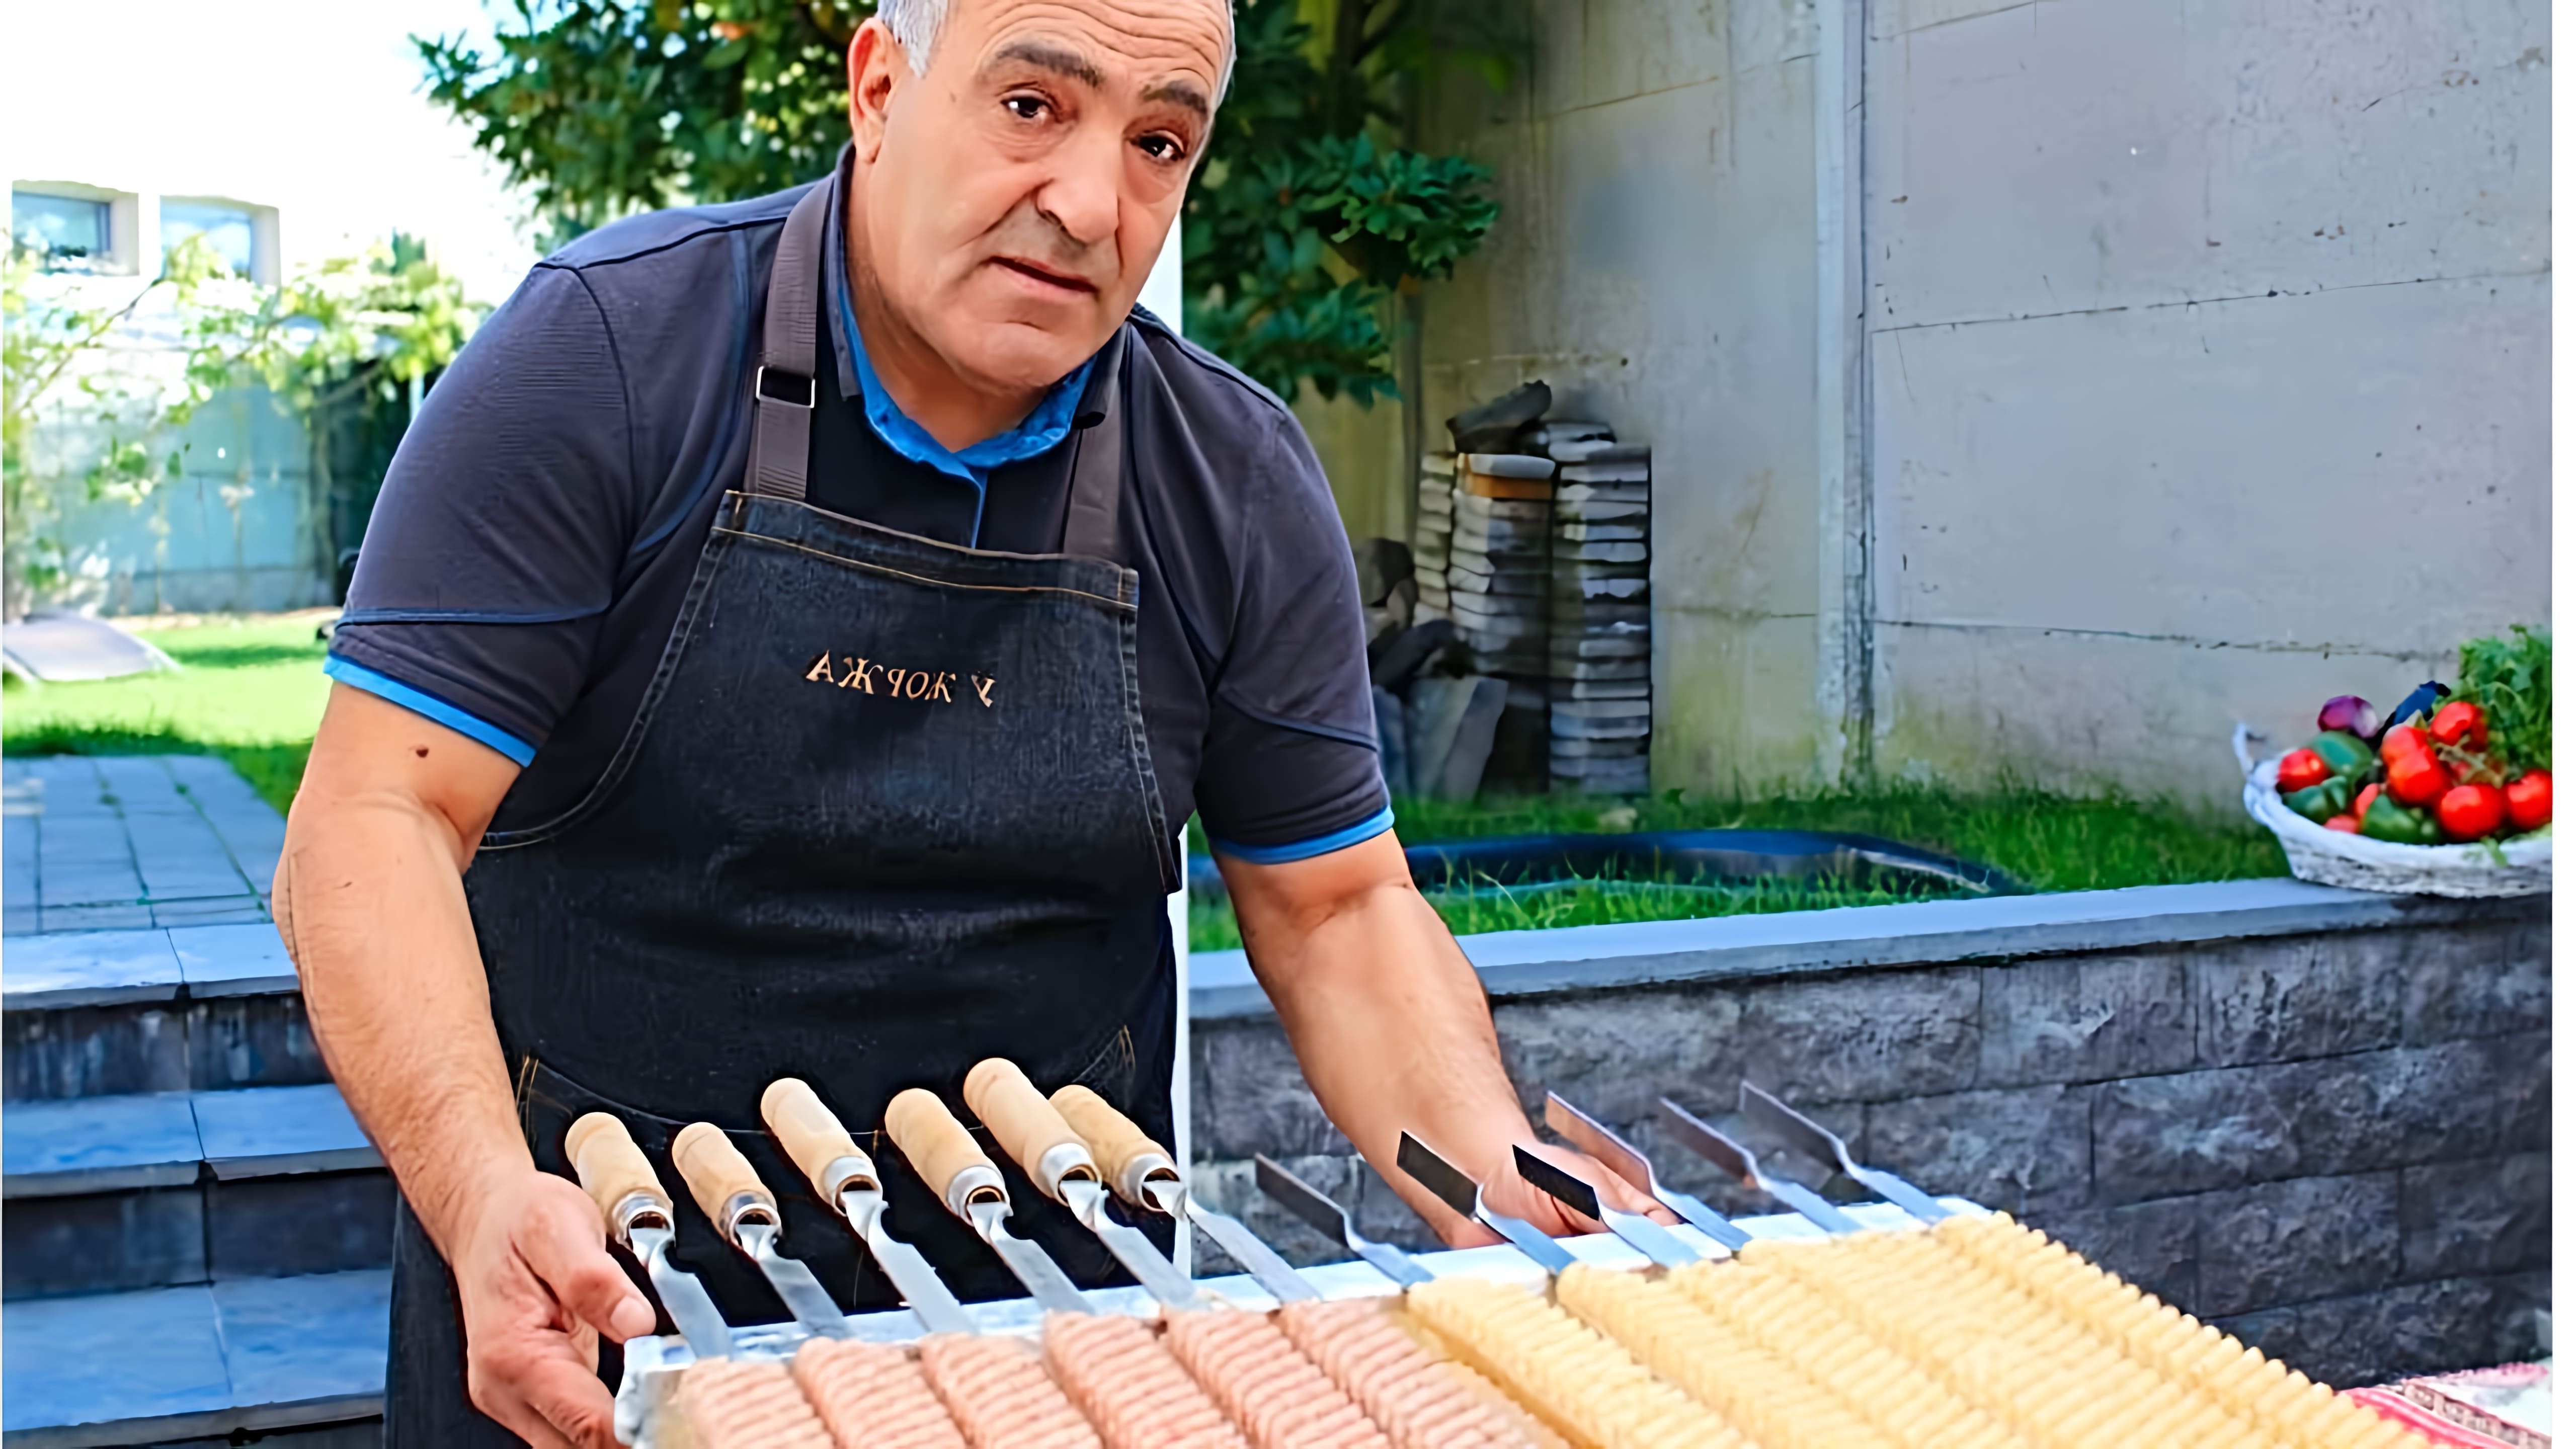 Видео демонстрирует уникальный способ приготовления шашлыков с использованием специальной машины для прессования шампуров